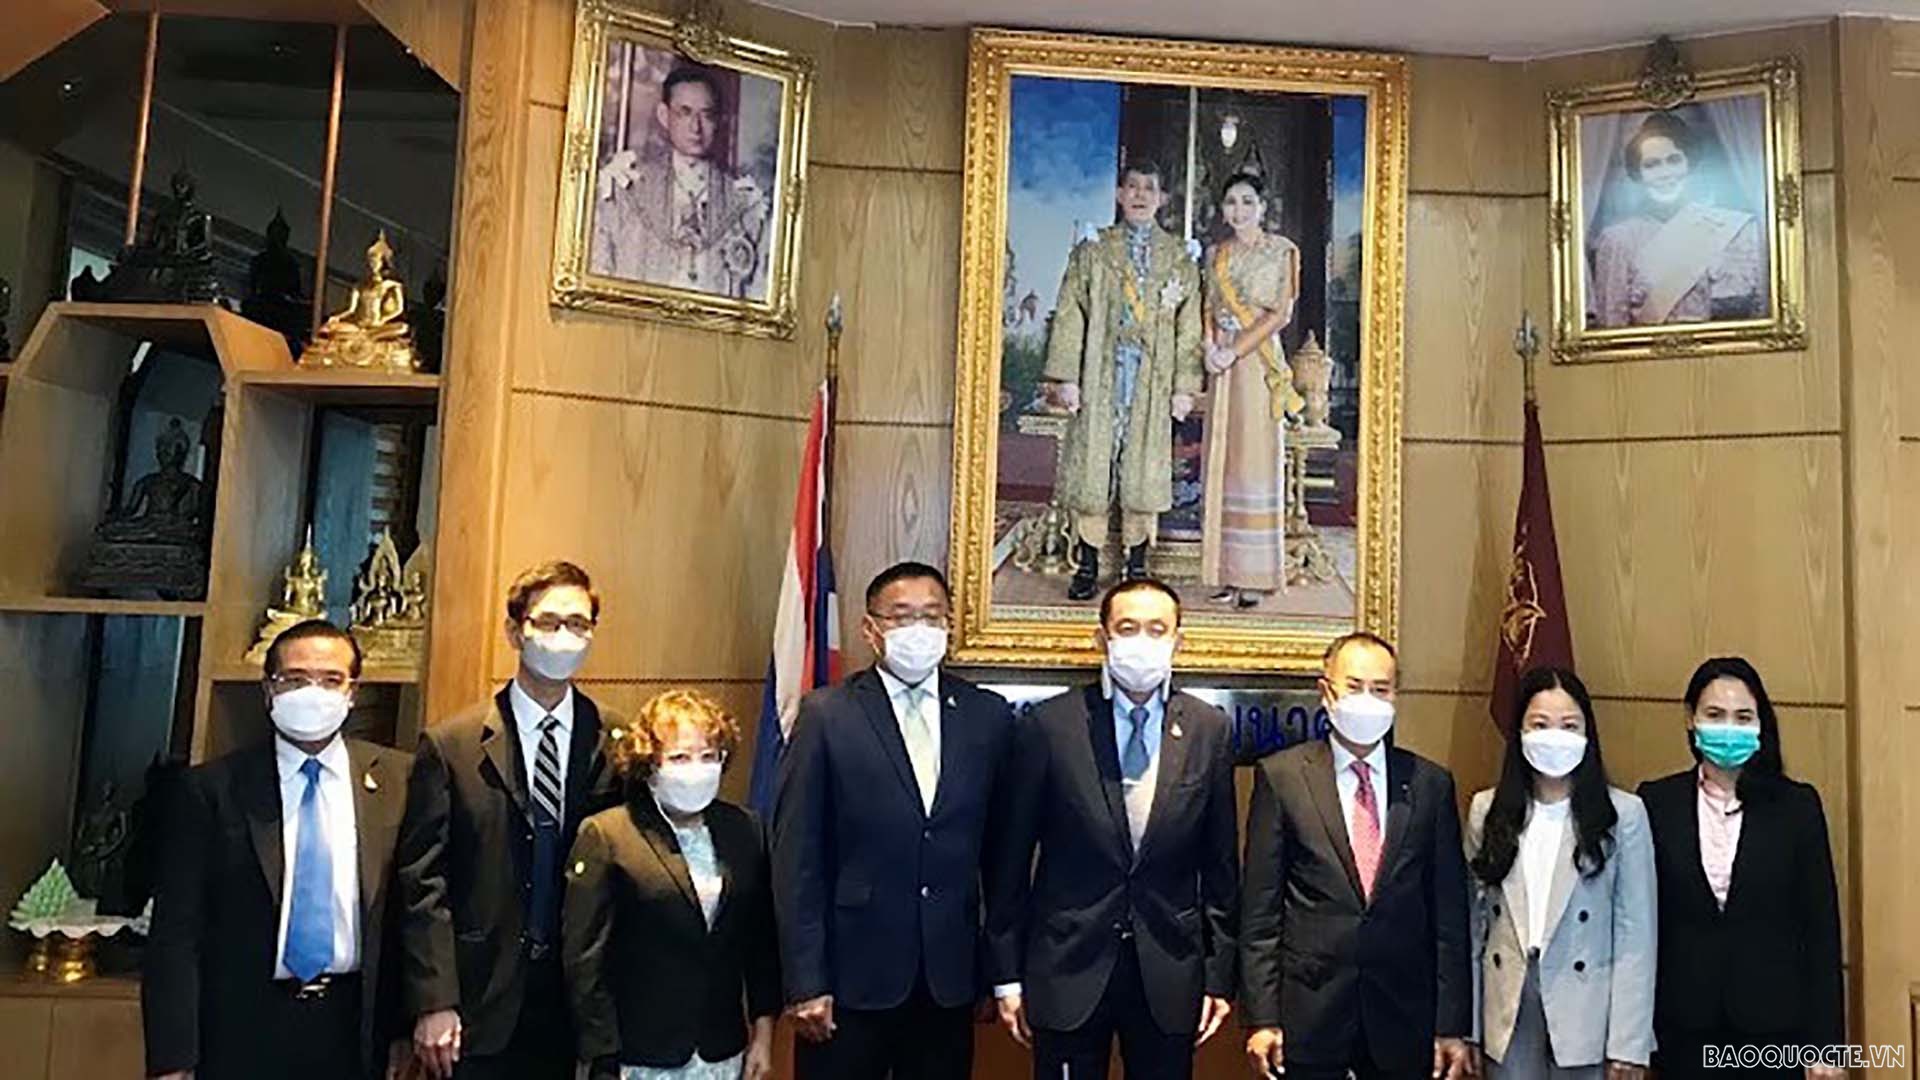 Đại sứ Phan Chí Thành, Bộ trưởng Saksayam Chidchob, cán bộ Đại sứ quán và lãnh đạo các đơn vị của Bộ Giao thông Thái Lan.